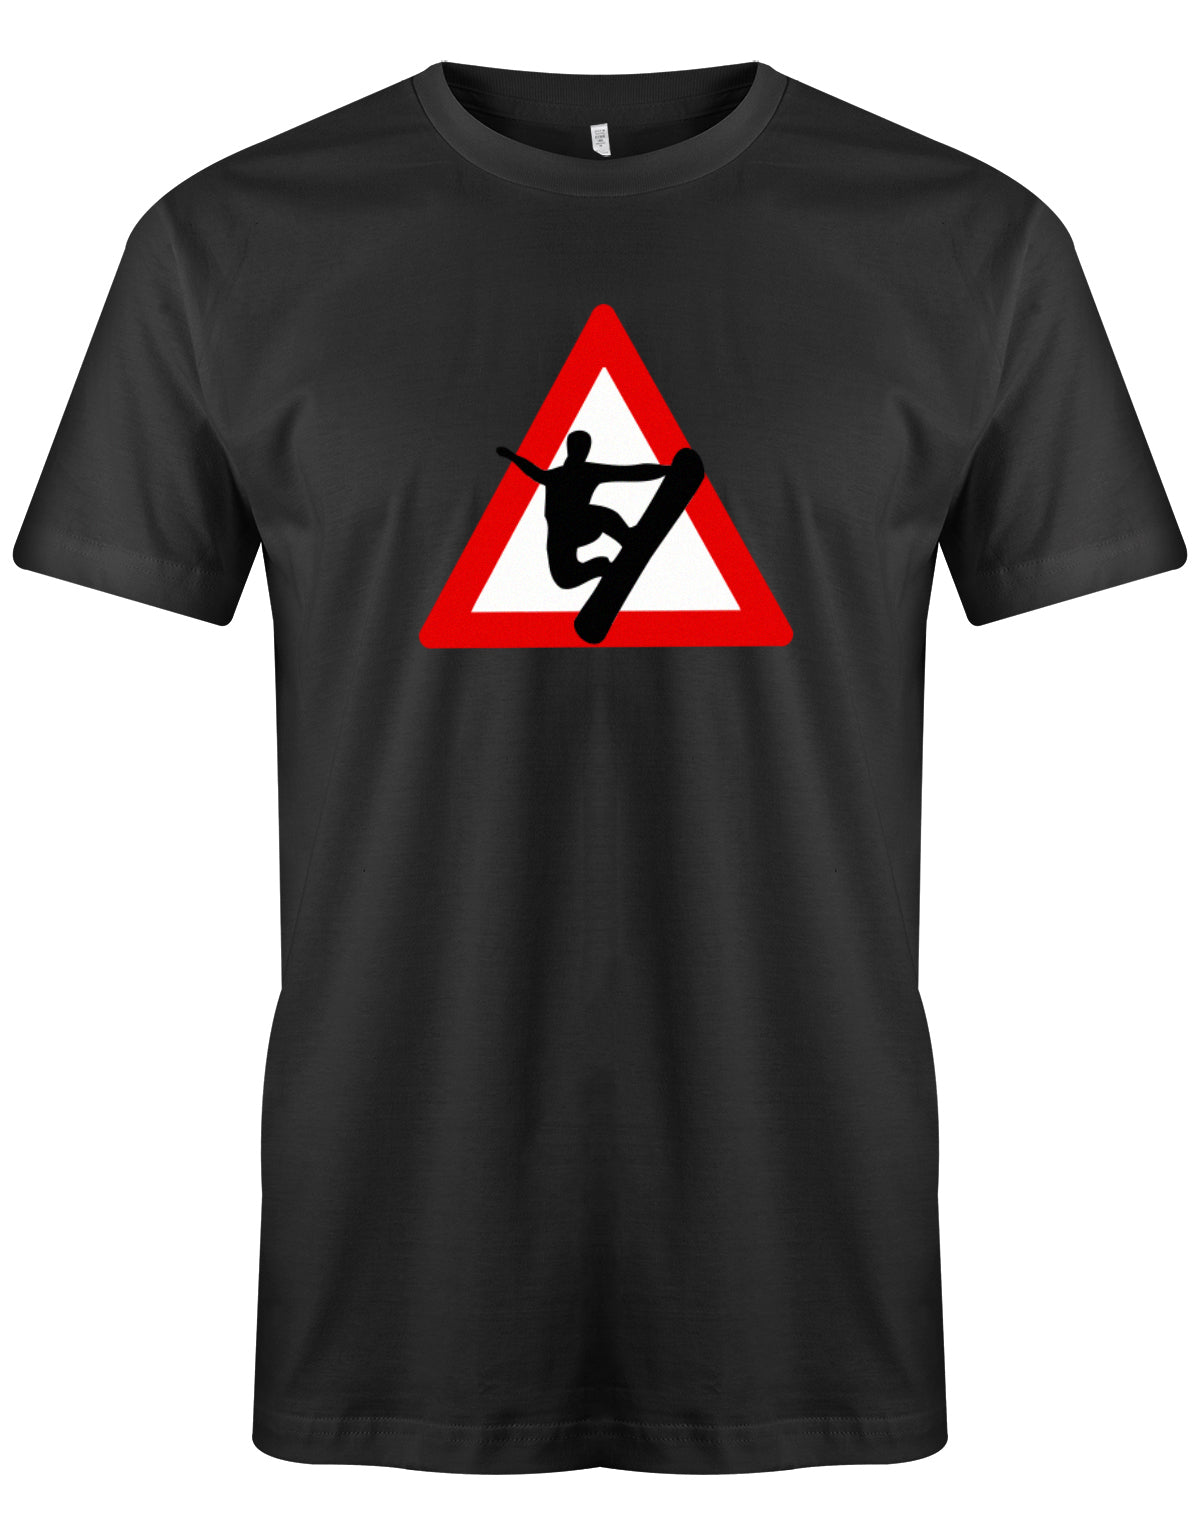 herren-shirt-schwarzjZ8w3VVnZxu0d